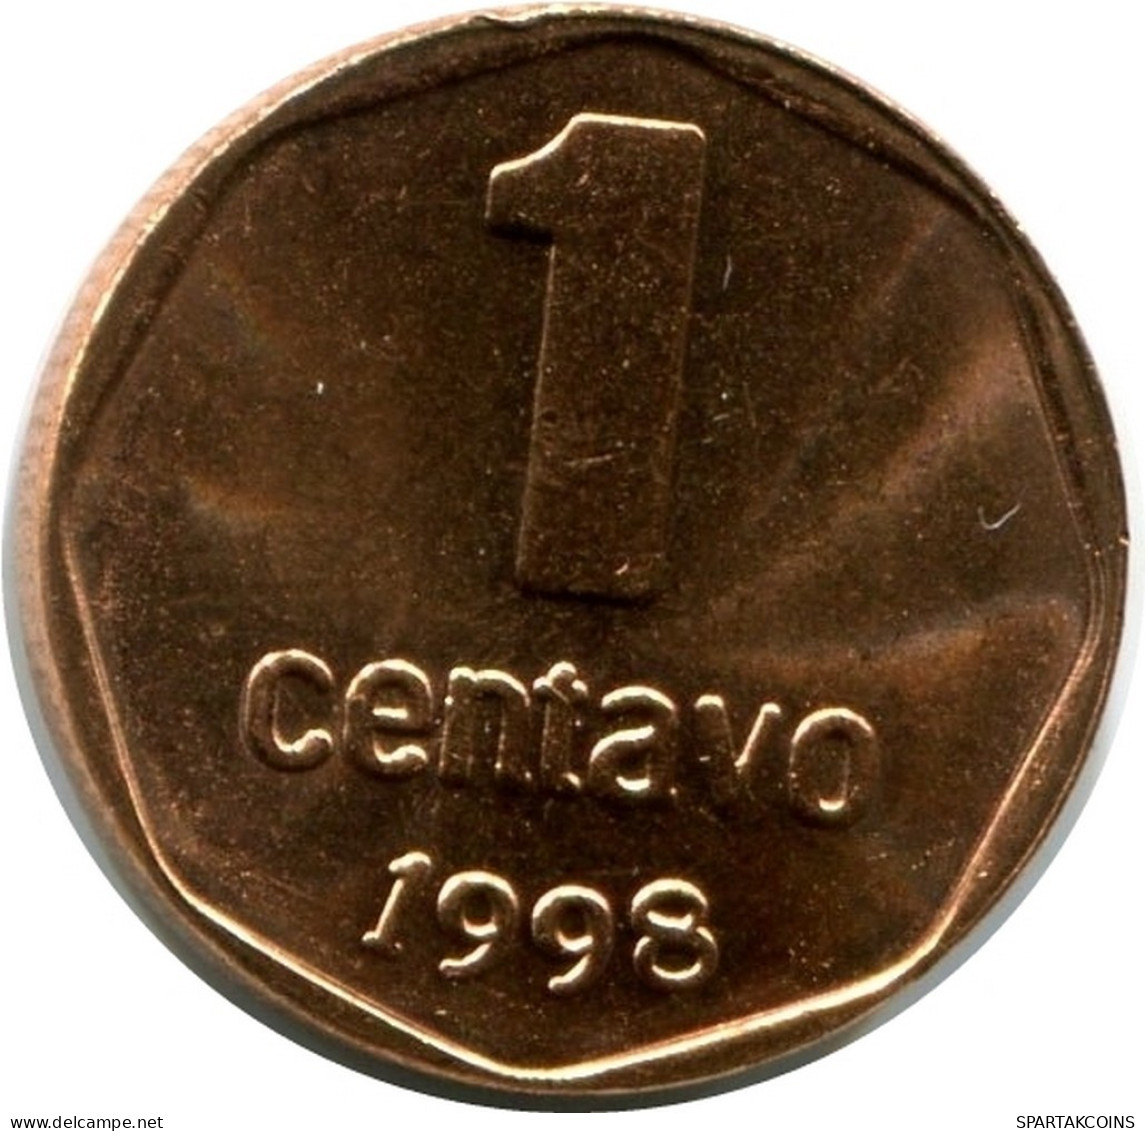 1 CENTAVO 1998 ARGENTINIEN ARGENTINA Münze UNC #M10066.D.A - Argentina